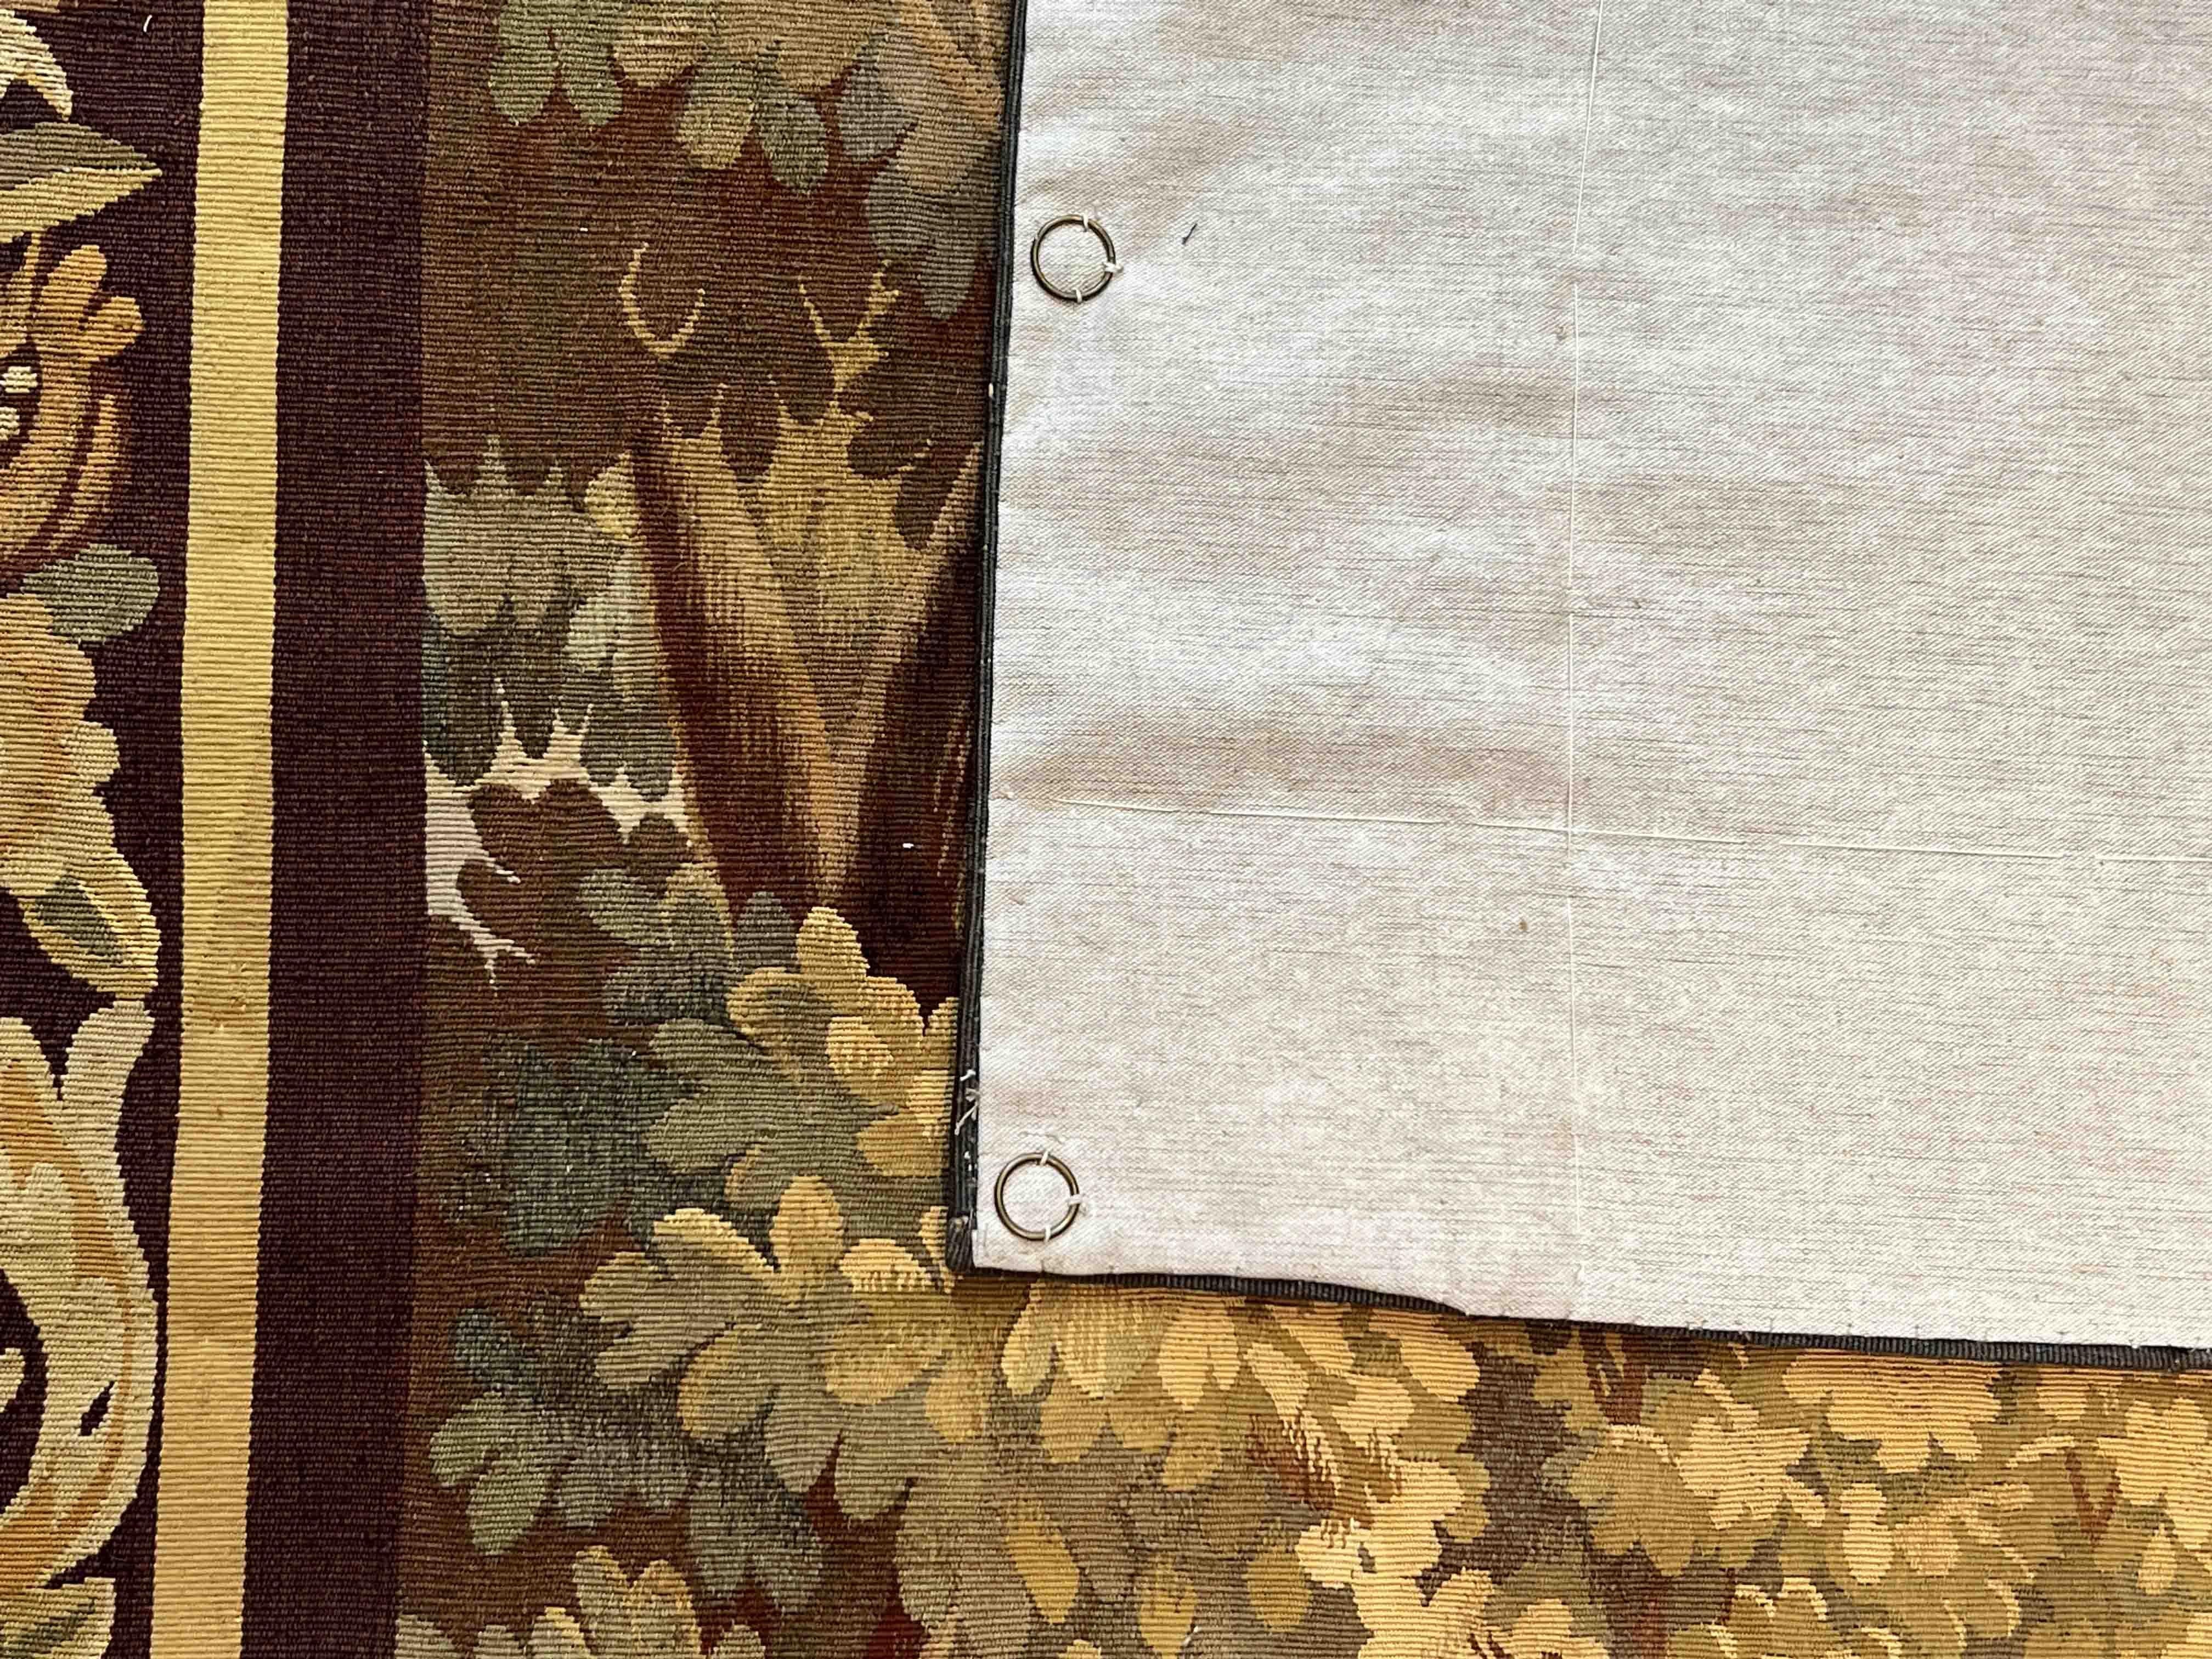 Tapisserie d'Aubusson de verdure du 19ème siècle - n° 1166

Grâce à notre atelier de restauration-conservation et aussi à notre savoir-faire, 
nous avons le plaisir de vous présenter des œuvres d'art en tissu telles que la tapisserie, 
Tapis et